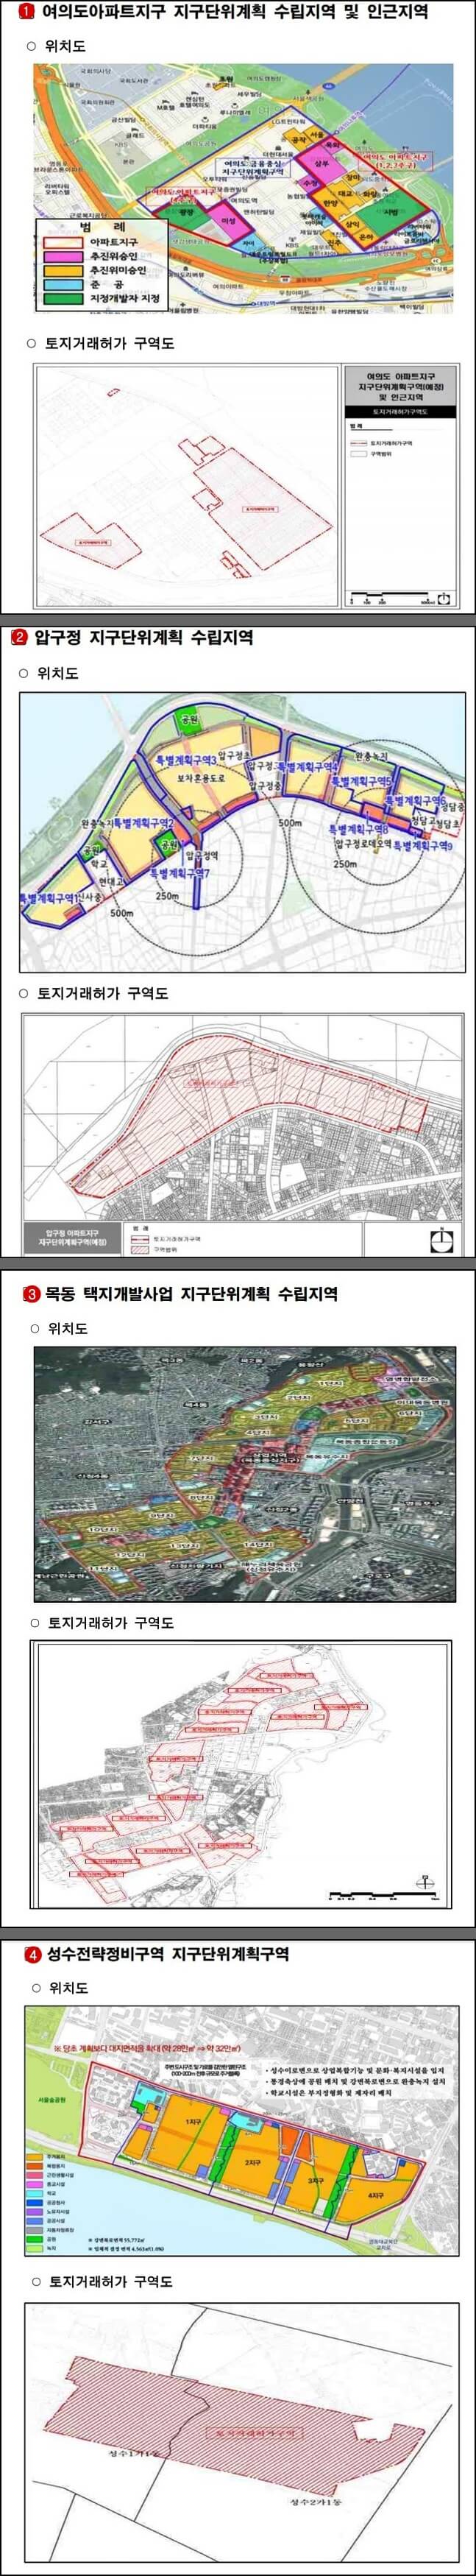 서울시-여의도-압구정-목동-성수-토지거래허가구역-지정-도면